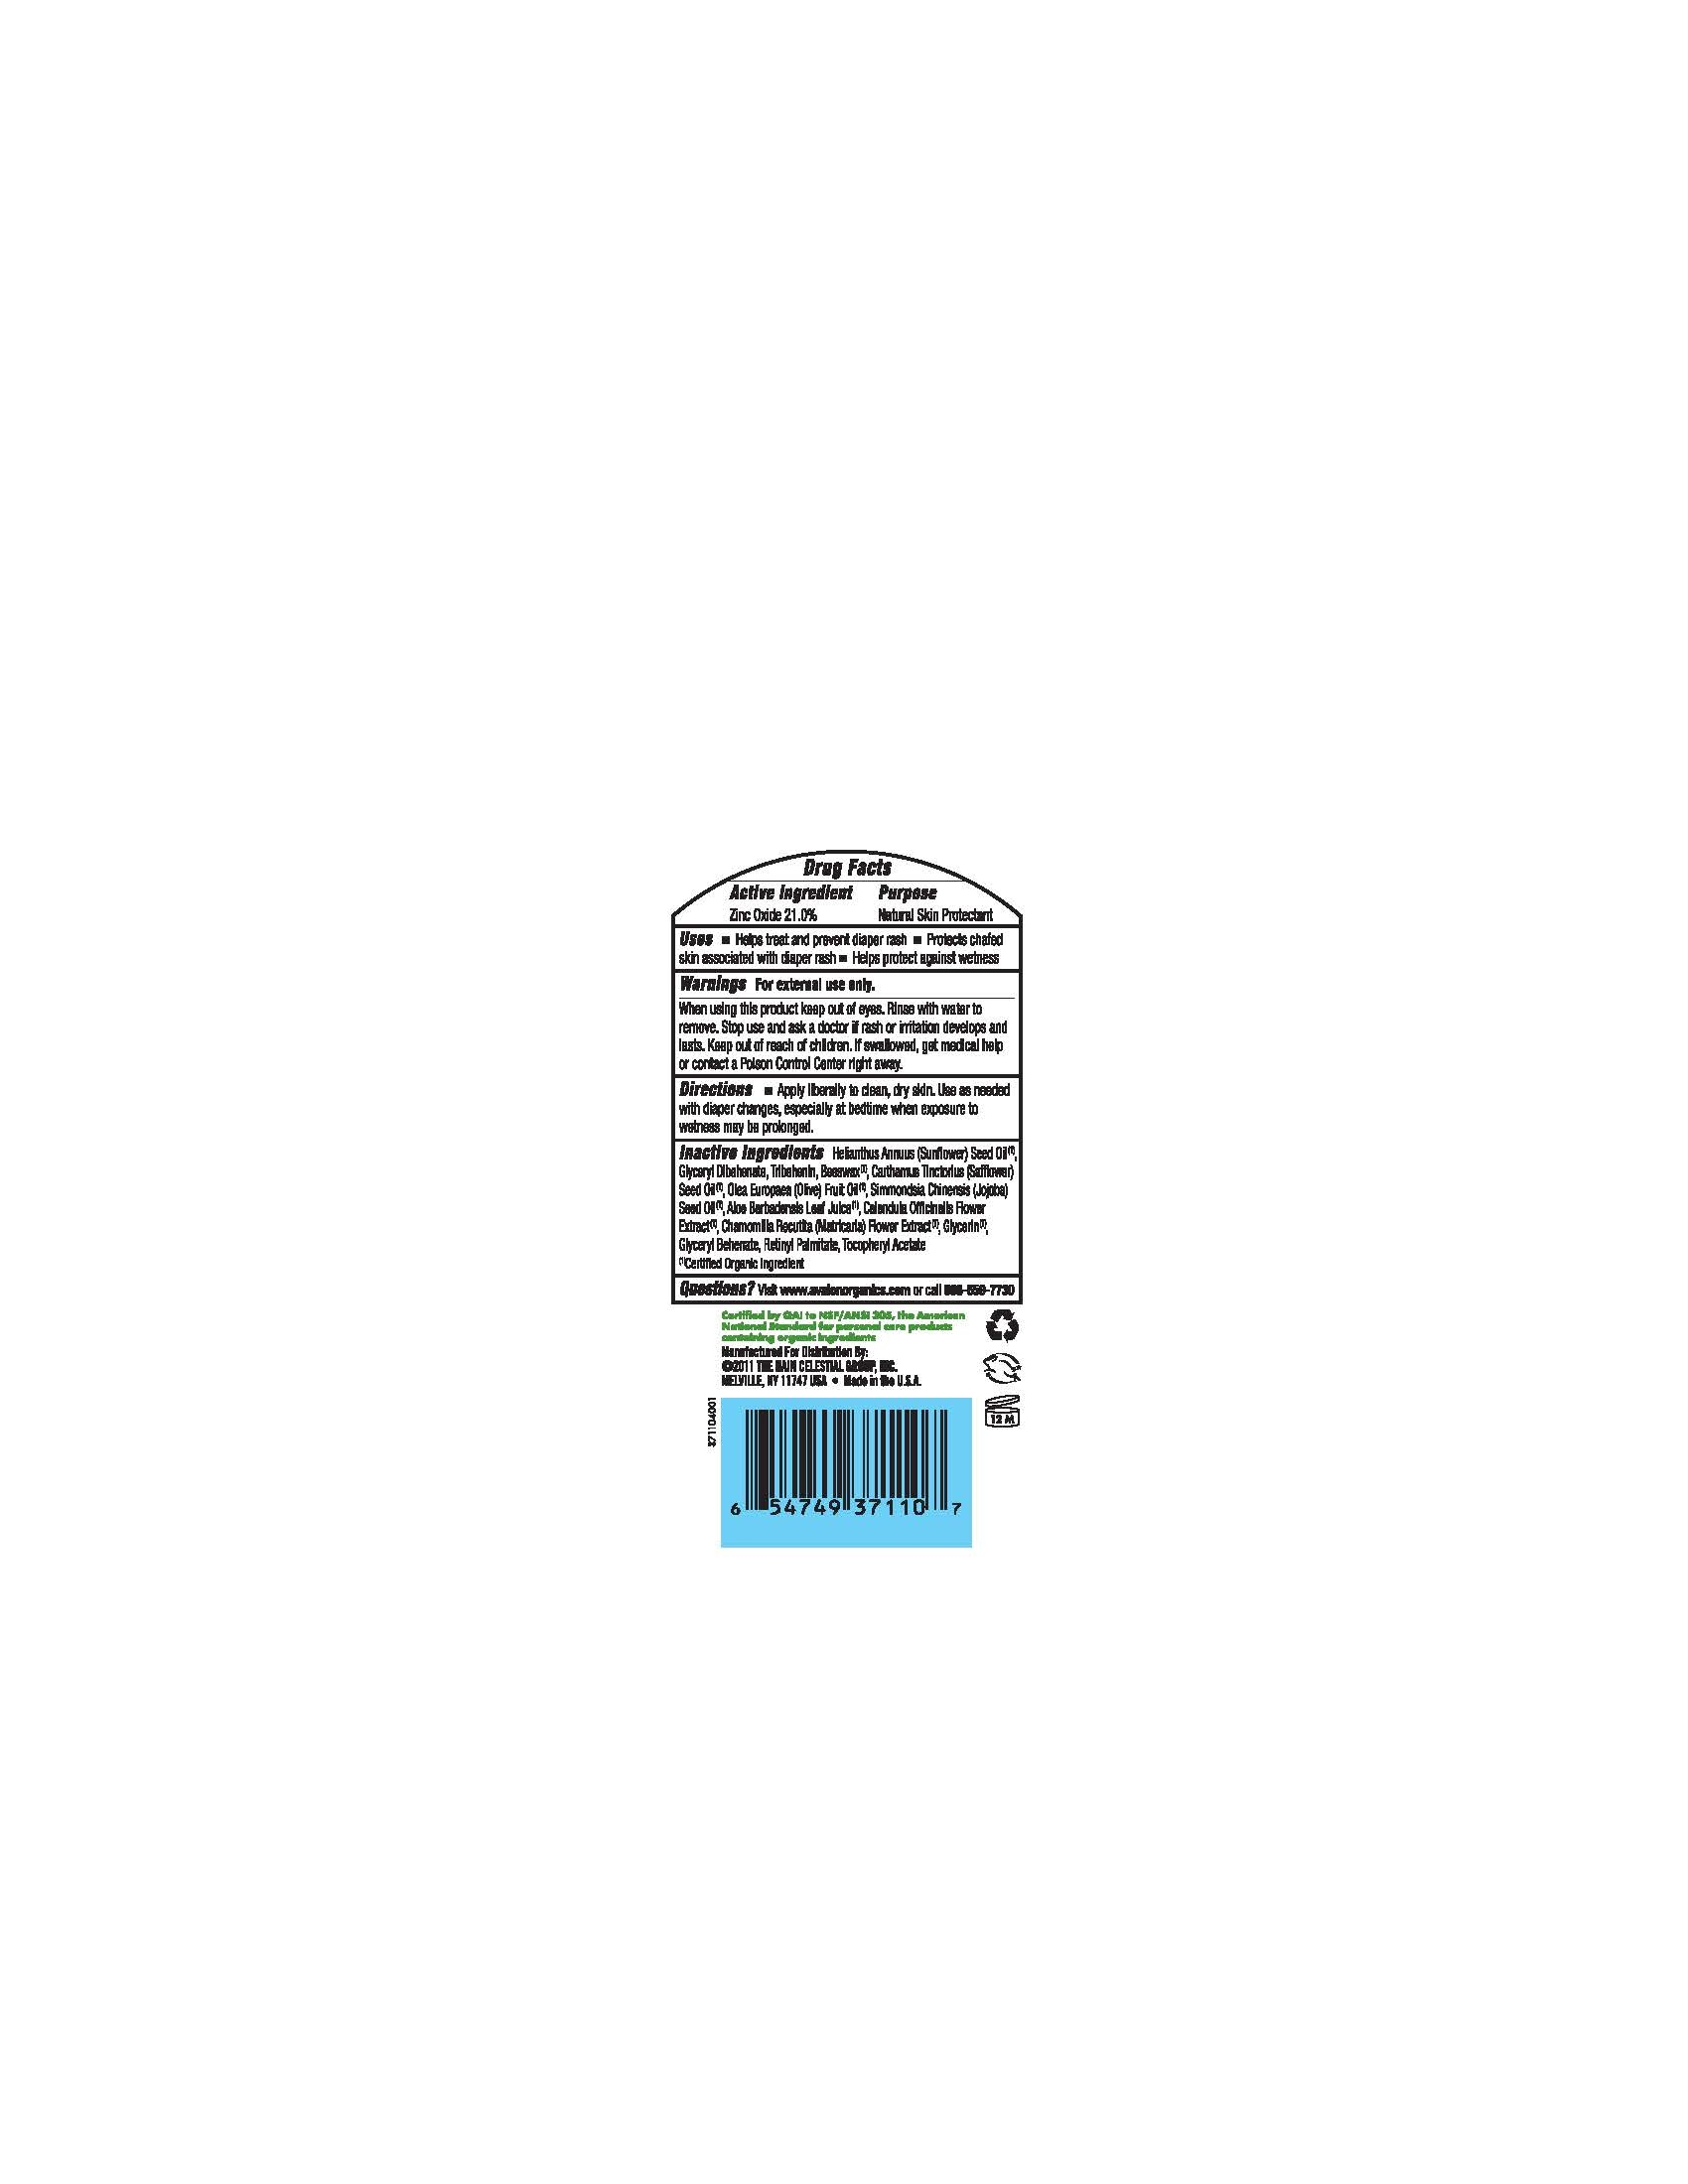 image of back bottle label